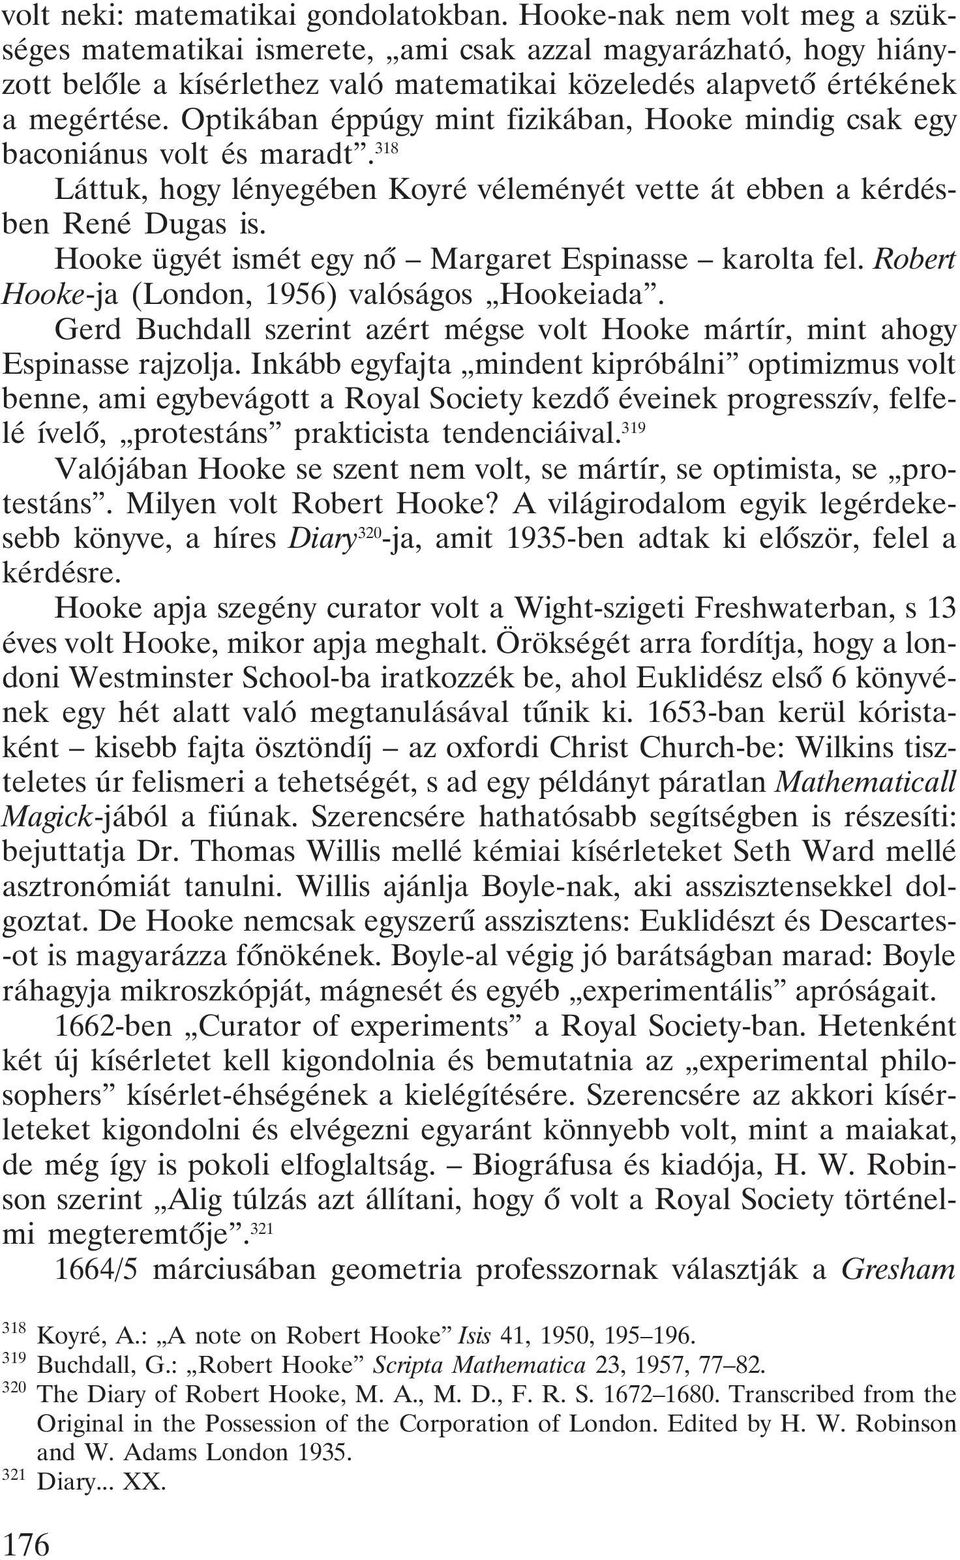 Optikában éppúgy mint fizikában, Hooke mindig csak egy baconiánus volt és maradt. 318 Láttuk, hogy lényegében Koyré véleményét vette át ebben a kérdésben René Dugas is.